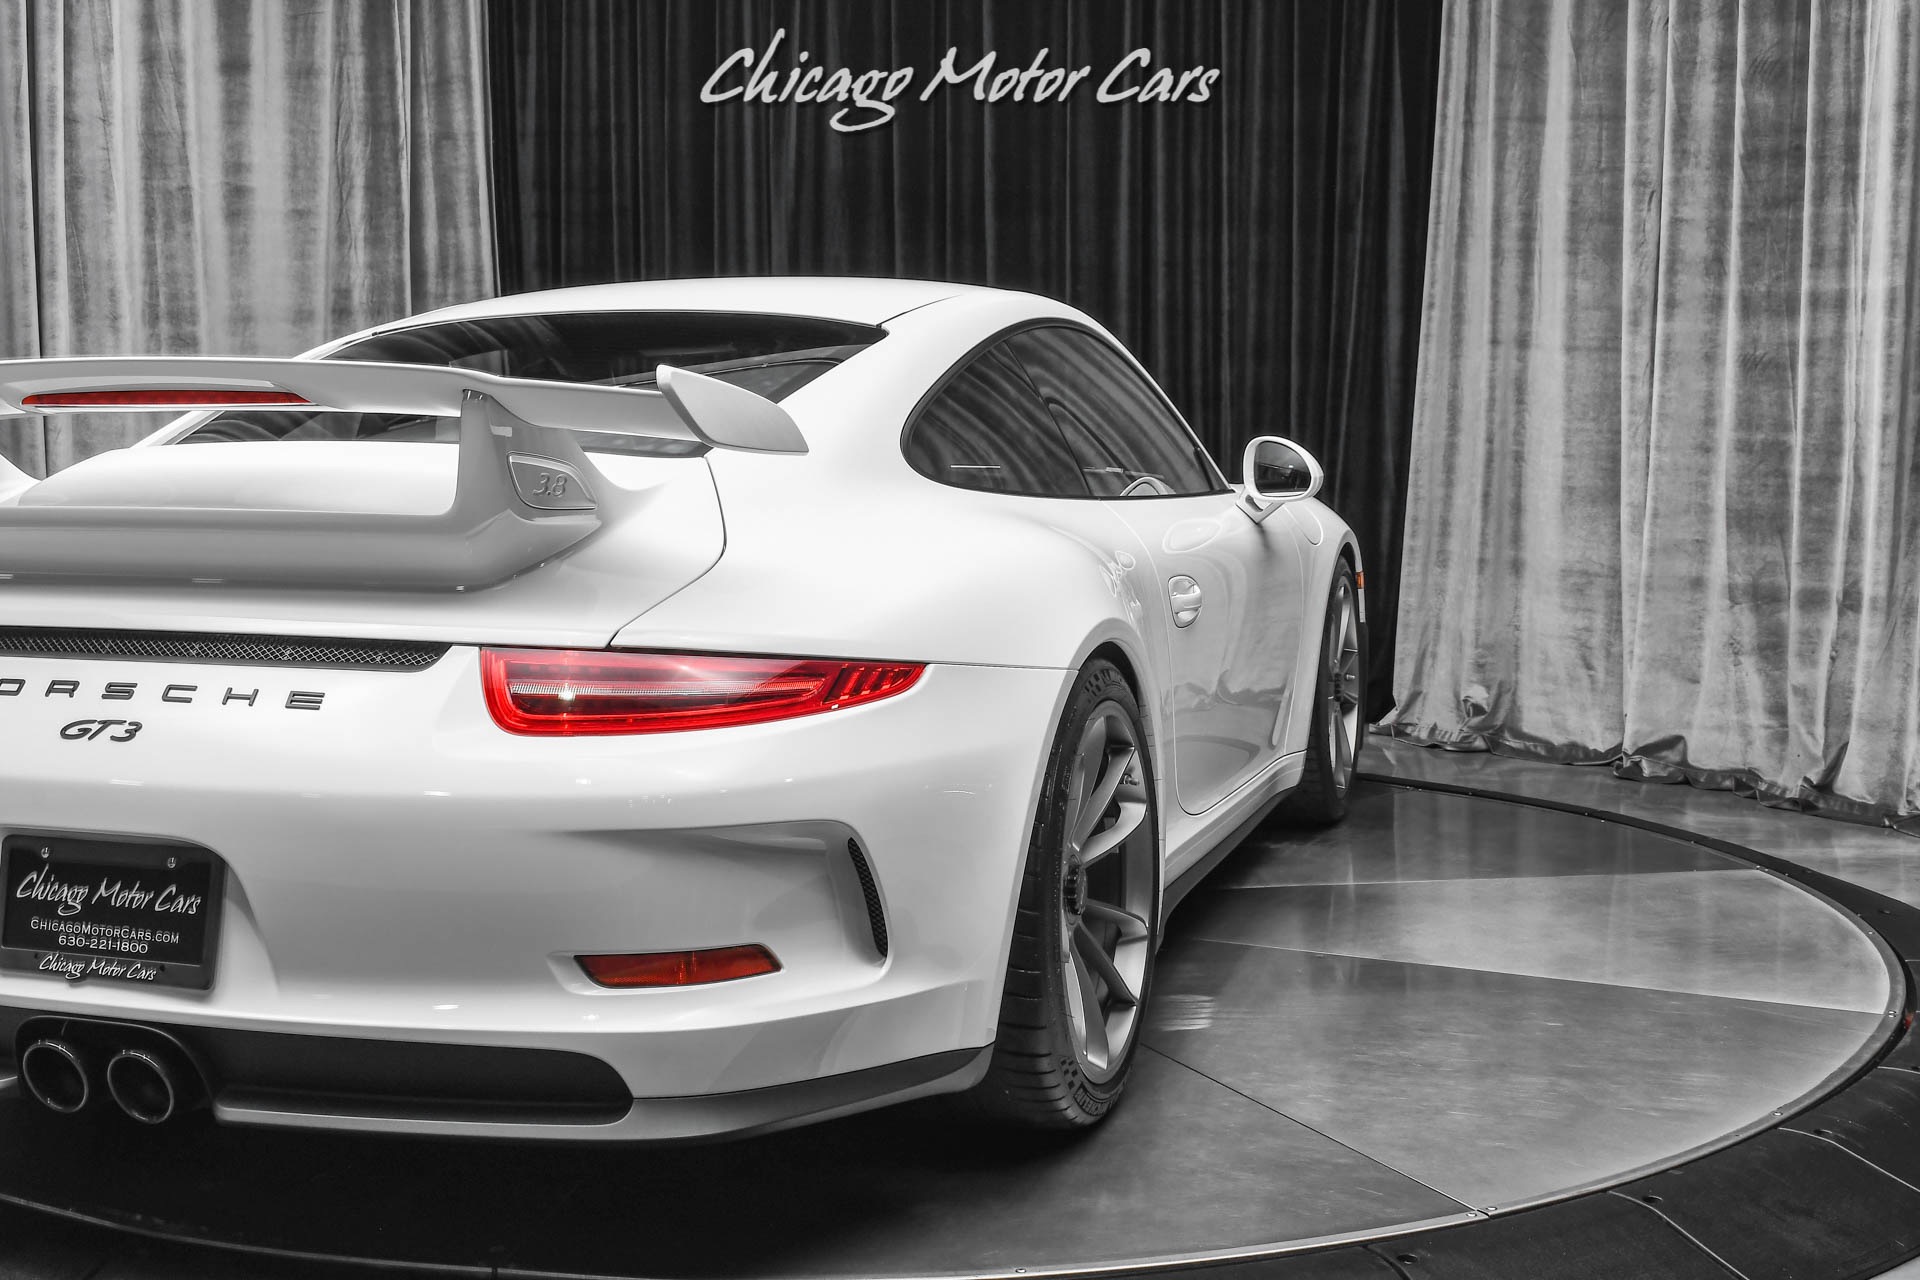 Used-2015-Porsche-911-GT3-Coupe-LOW-Miles-PCCB-PDLS-Carbon-Fiber-Sport-Chrono-Pkg-LOADED